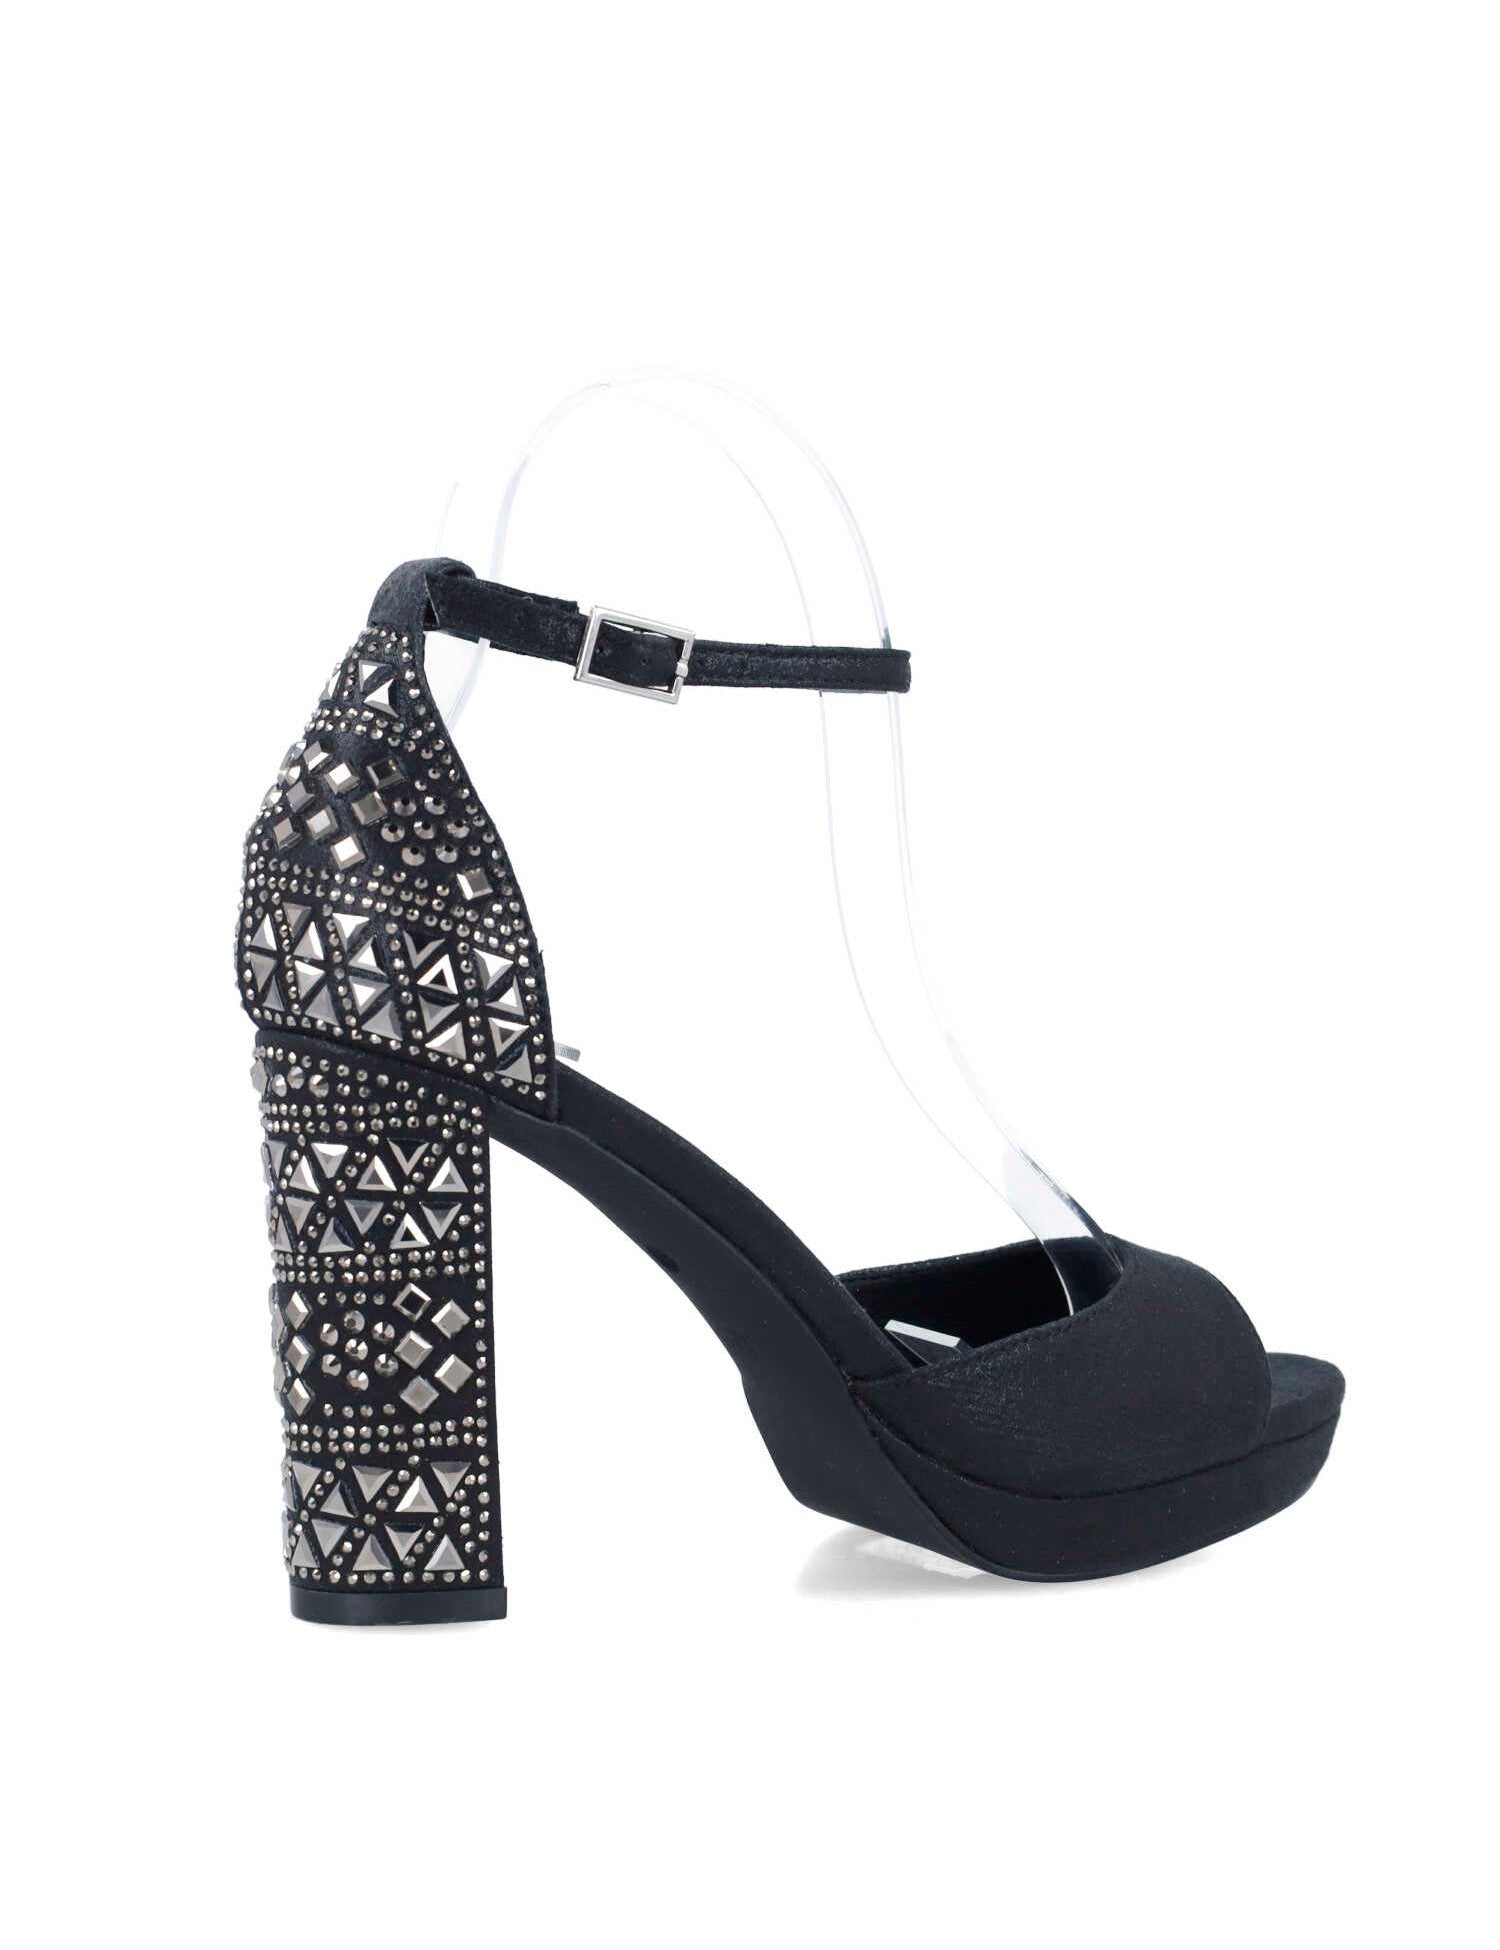 Black Embellished High-Heel Sandals_24879_01_03